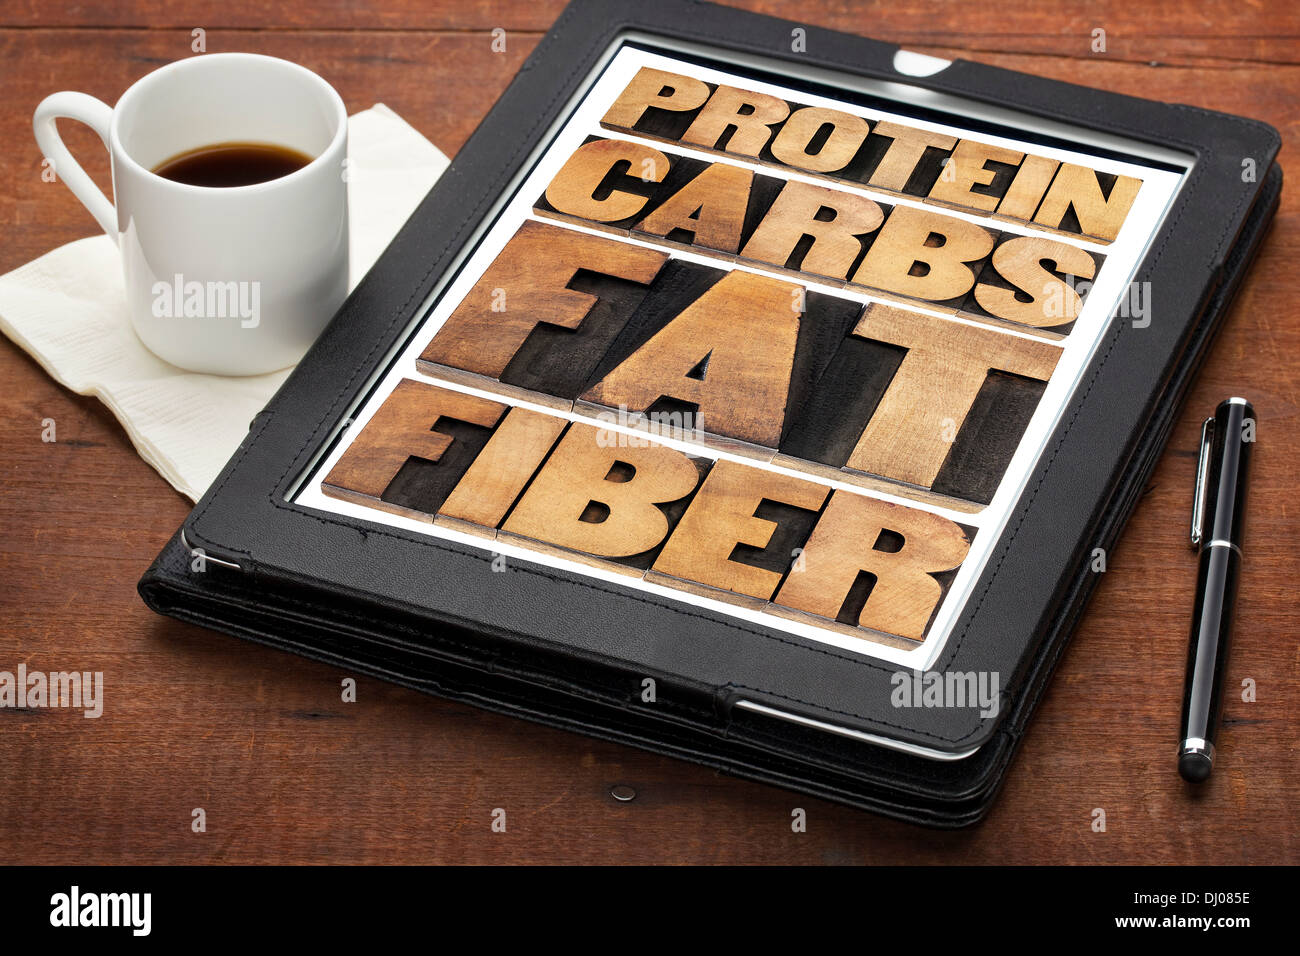 Proteine, carboidrati, grassi, fibre - componenti della dieta di cibo - word abstract in rilievografia tipo di legno su una tavoletta digitale Foto Stock